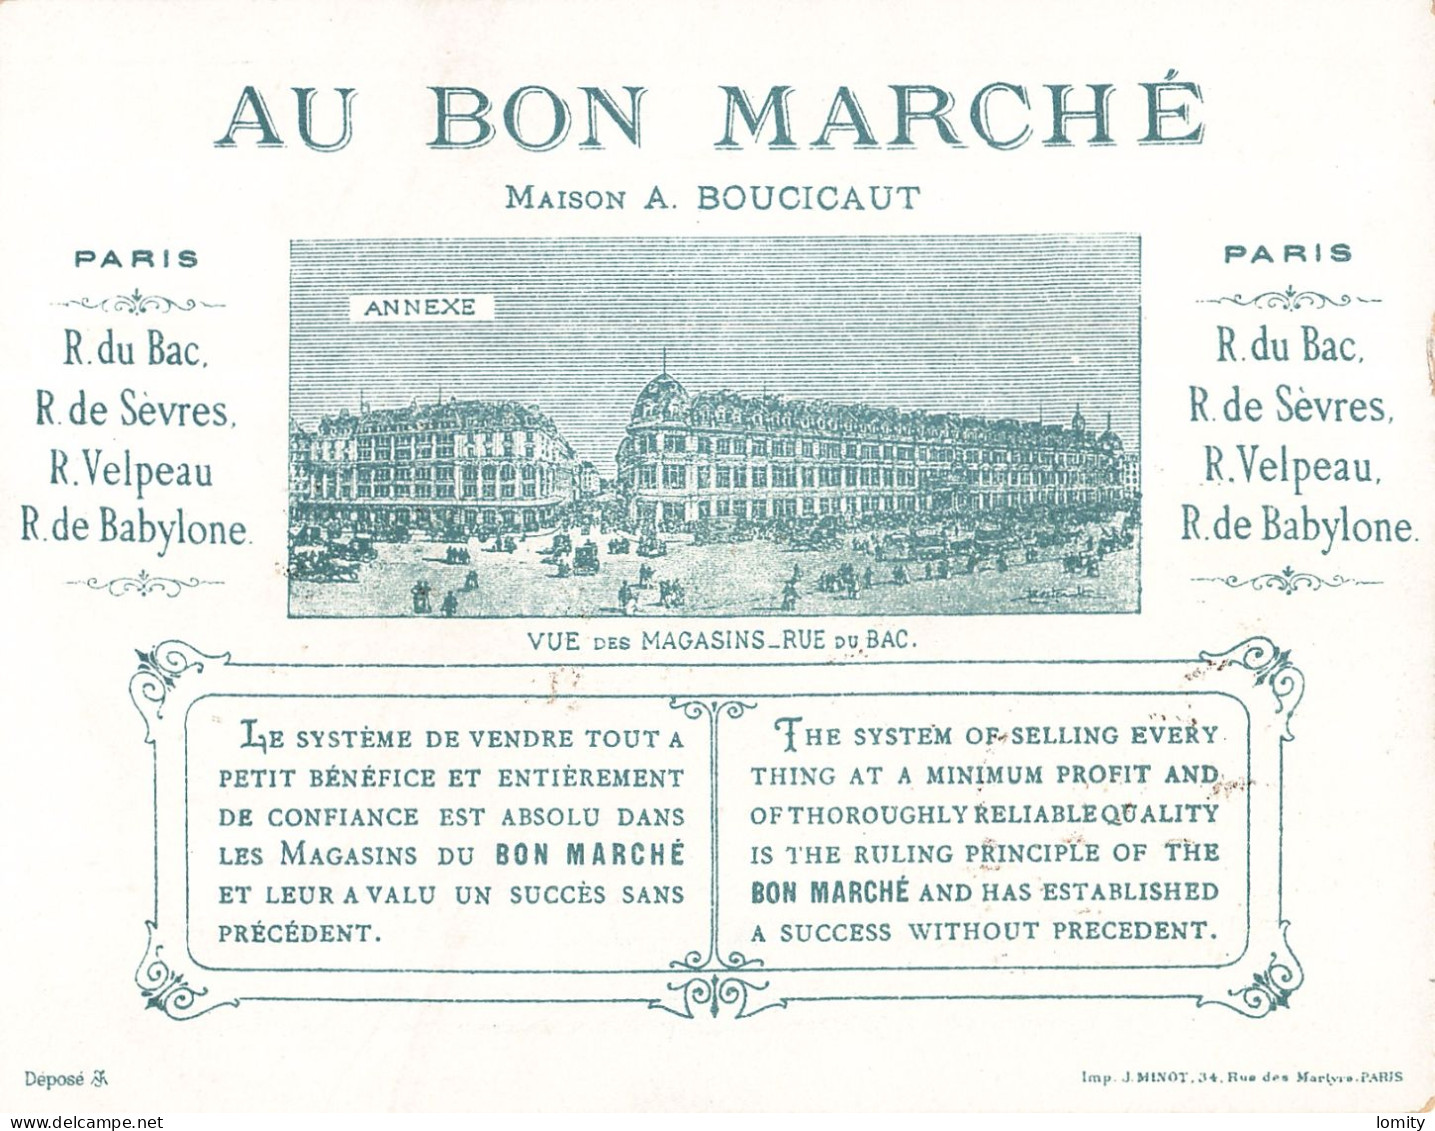 Superbe série 6 chromos Au Bon Marché Paris maison Boucicaut jolie chromo imp Minot format 13.8 x 10.8 cm illustration